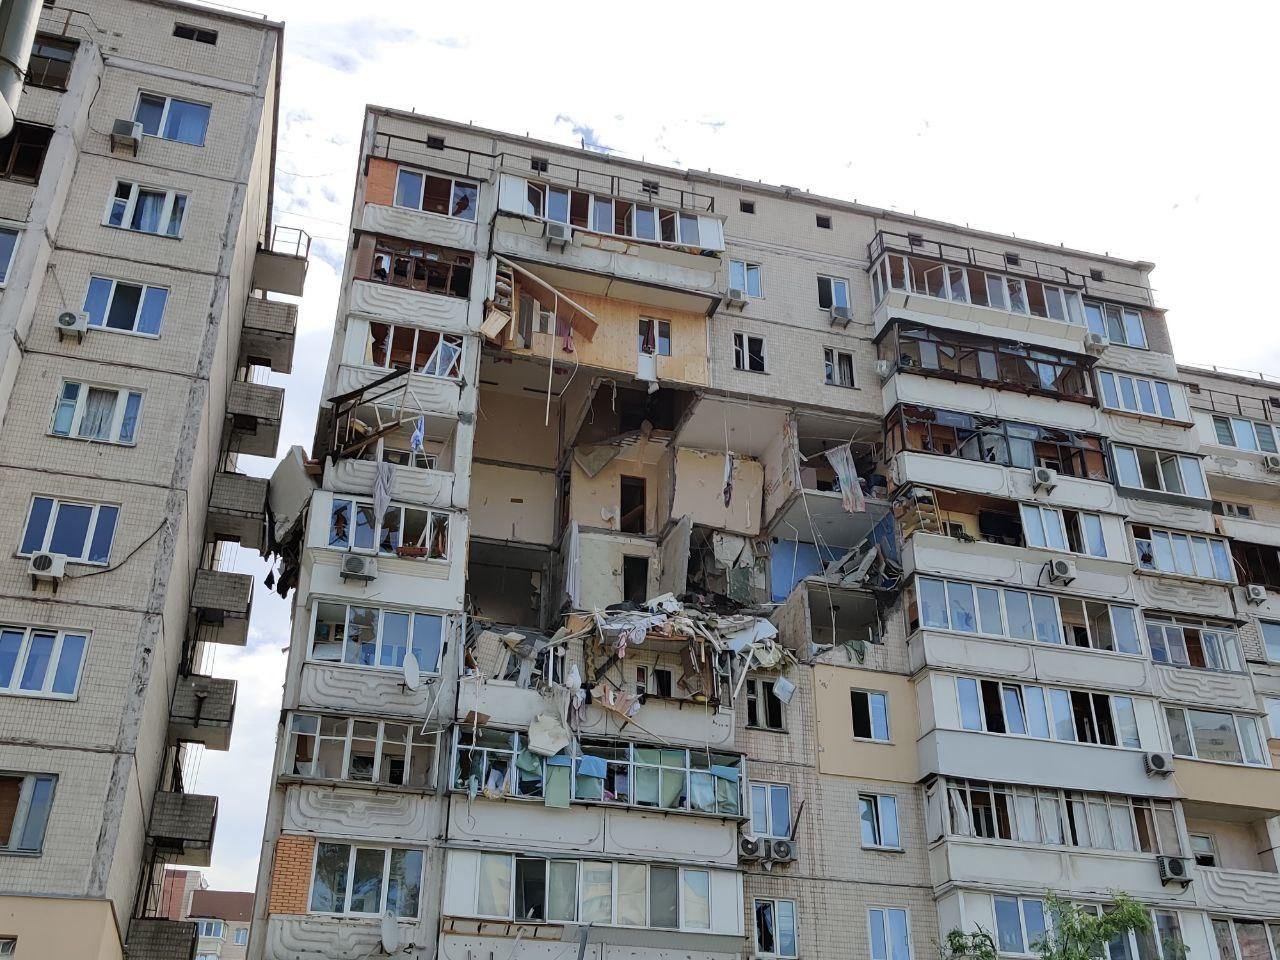 Странный взрыв в доме в Подмосковье (ФОТО, ВИДЕО)